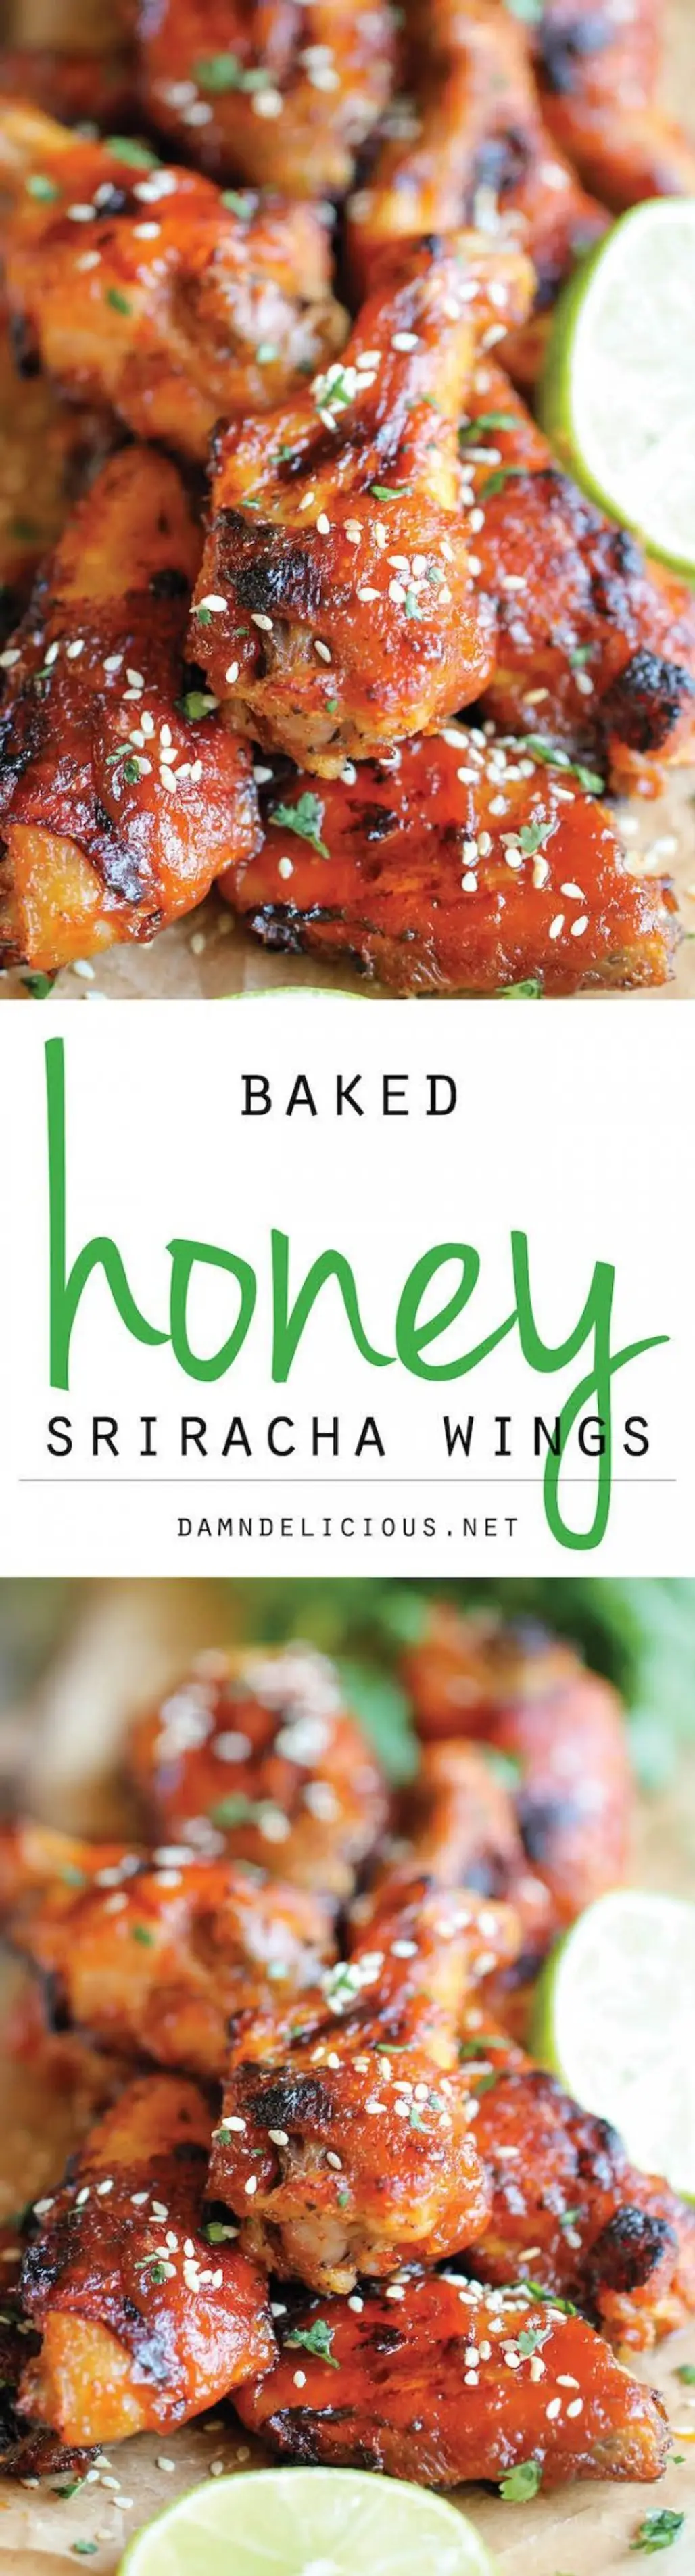 Baked Honey Sriracha Wings